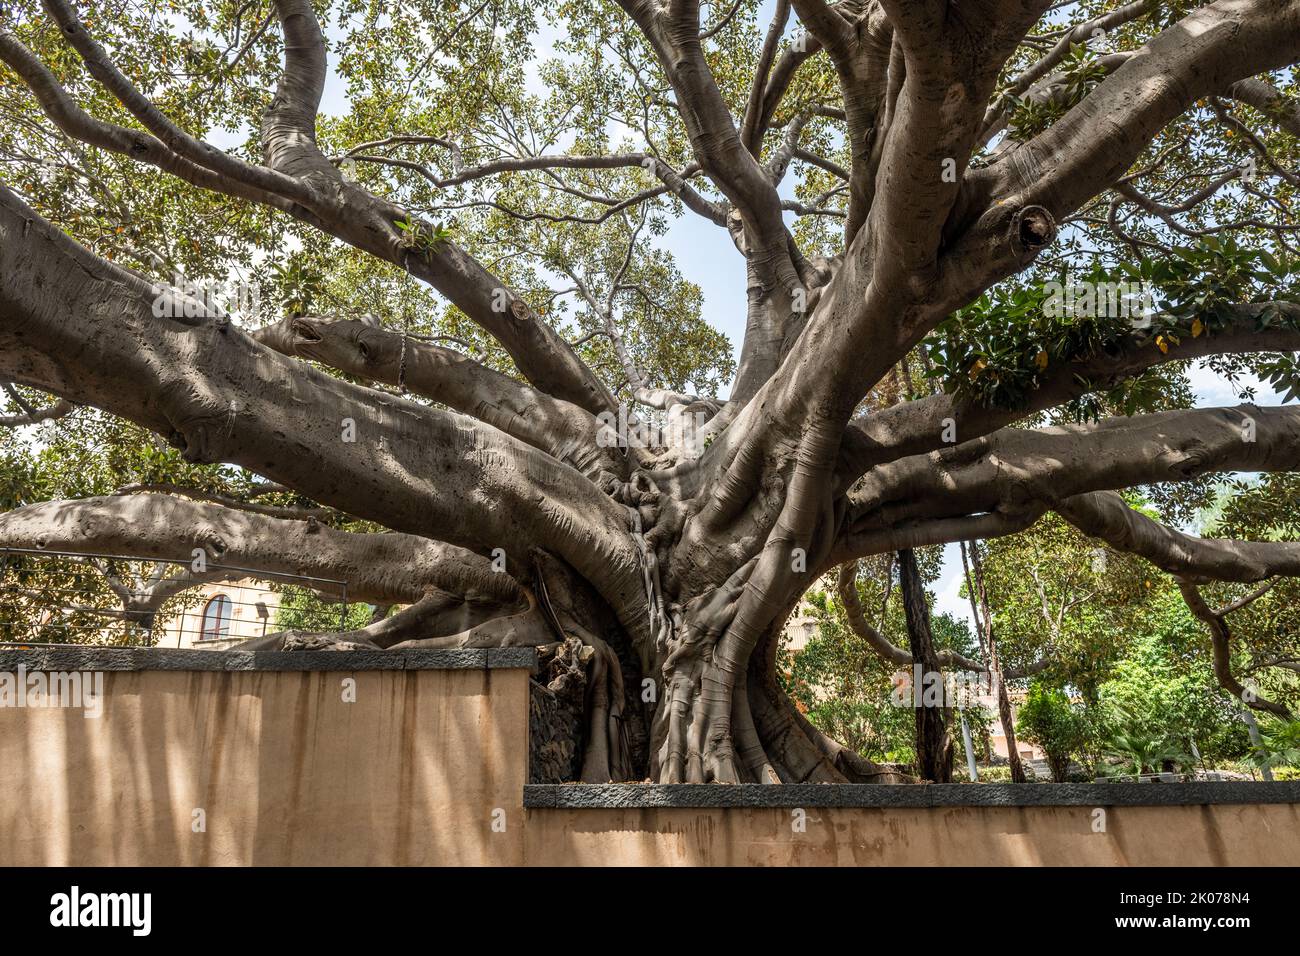 Un enorme albero di fico di Moreton Bay (Ficus macrophylla) in un giardino scolastico a Catania, Sicilia, oltre 12m in circonferenza e 25m in altezza Foto Stock